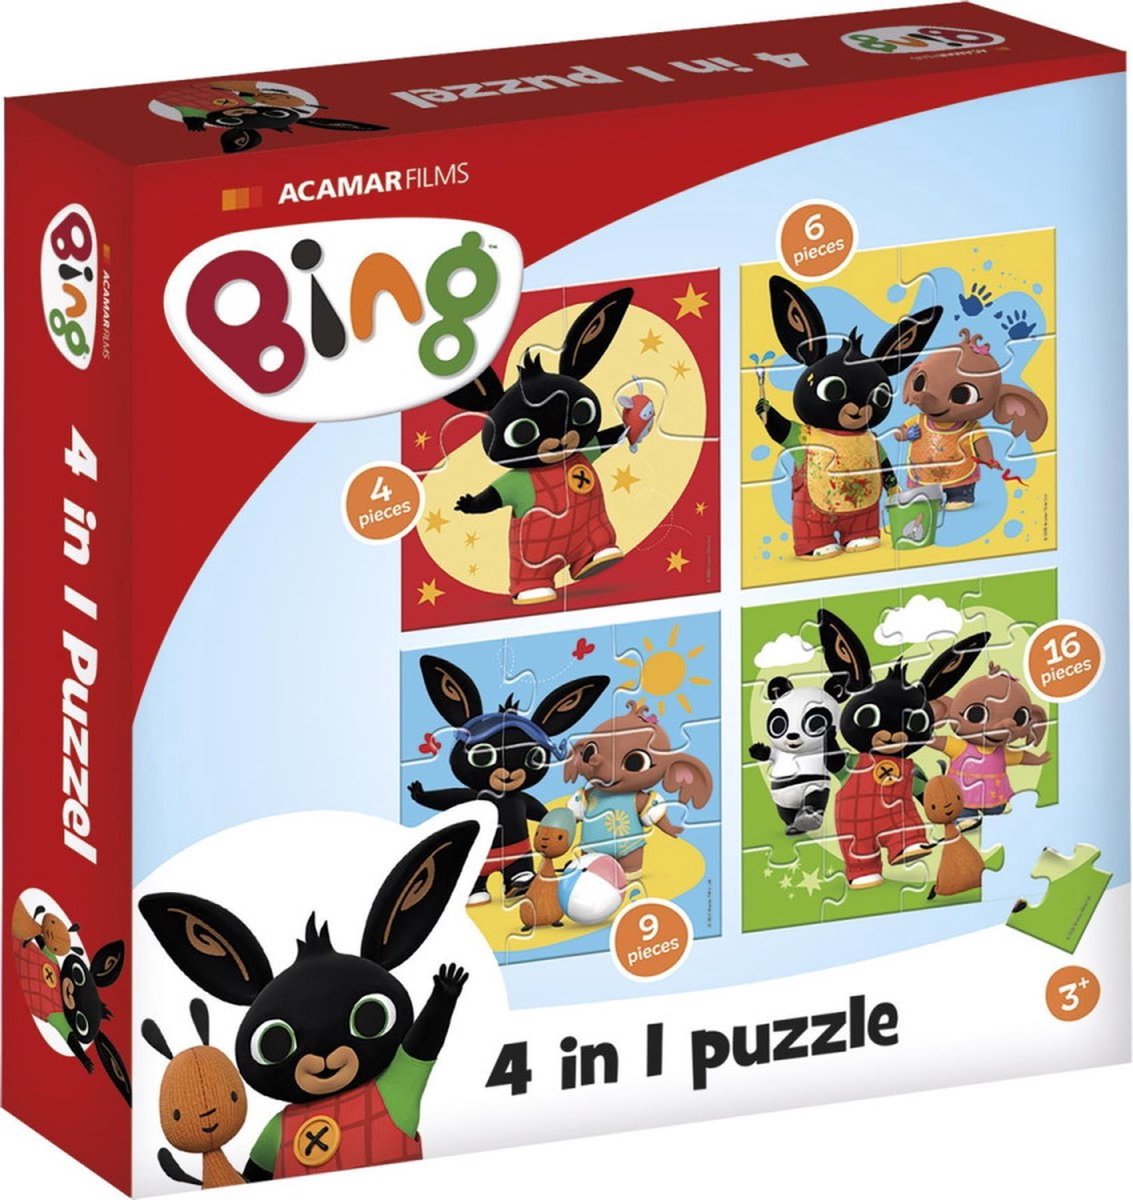 Bing puzzel 4 in 1 educatief peuter speelgoed - kinderpuzzel 4x6x9x16 stukjes leren puzzelen - cadeautip puzzel 3 jaar en ouder - Bambolino Toys - Bambolino